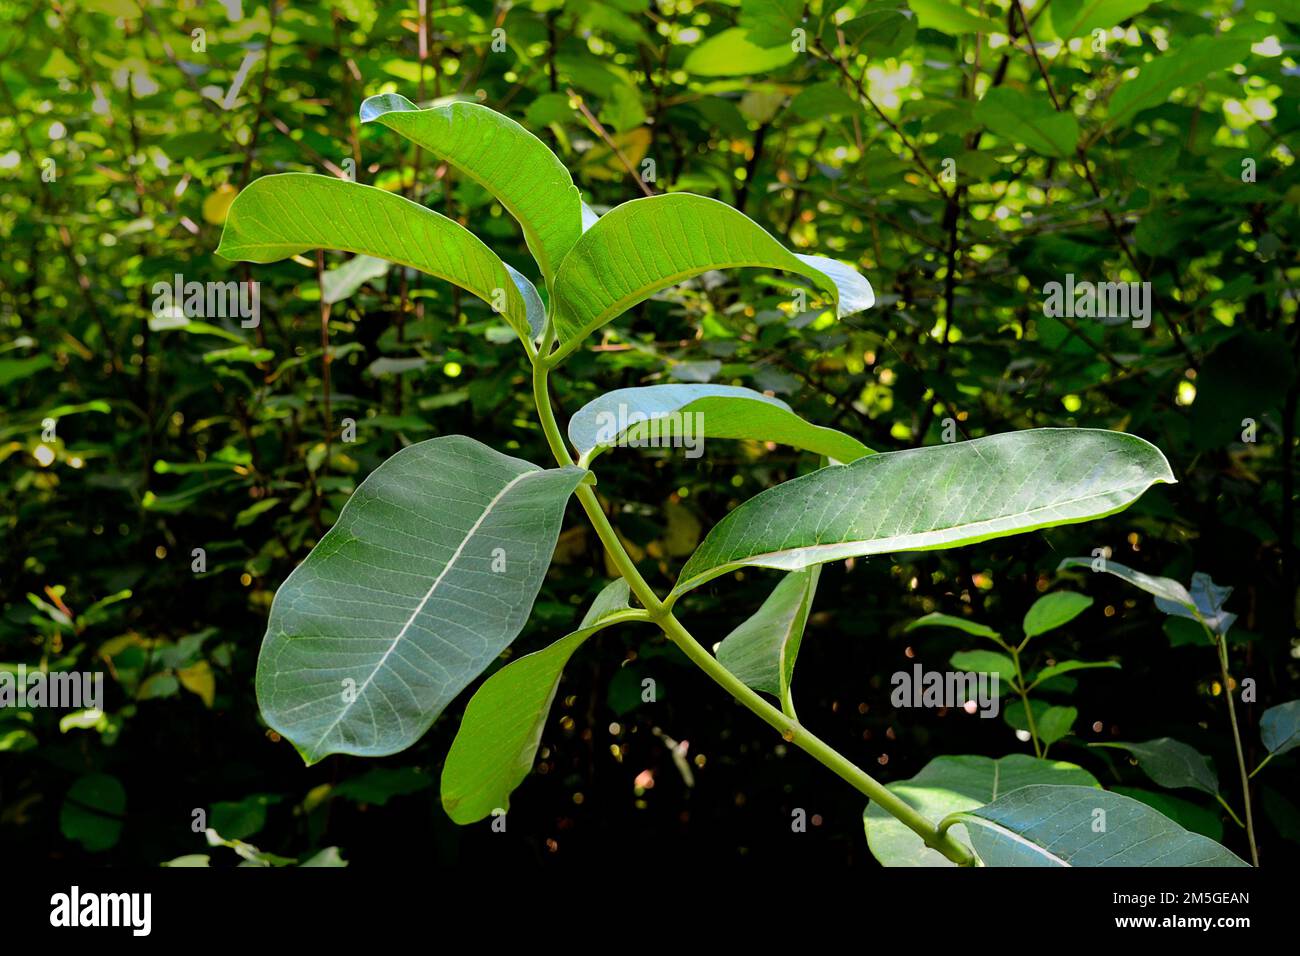 Un gros plan d'un laitaded commun, asclepias syriaca plante dans un jardin vert Banque D'Images